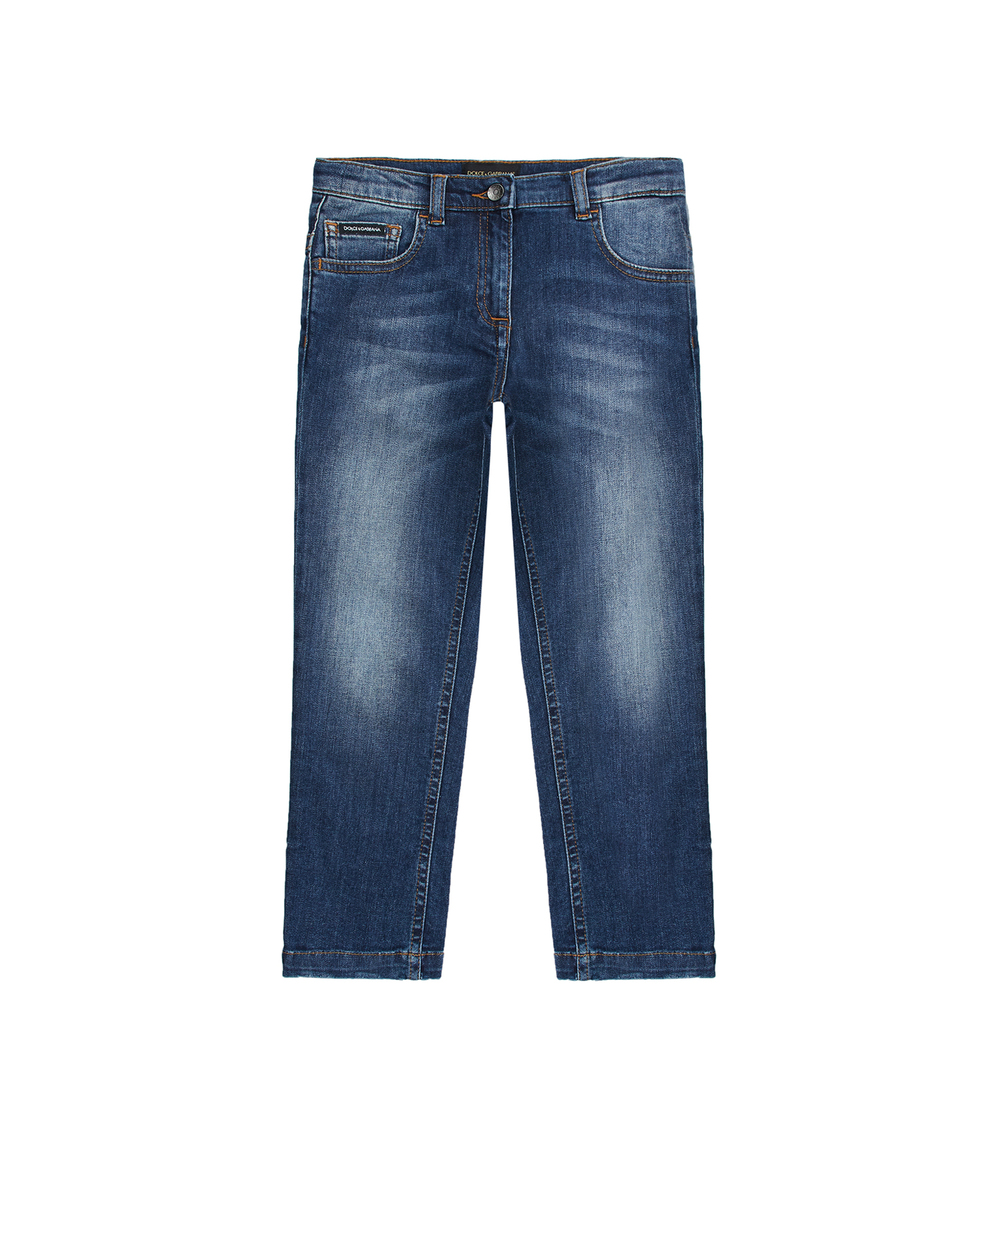 Детские джинсы Dolce&Gabbana Kids L51F10-LD719-B, темно-синий цвет • Купить в интернет-магазине Kameron